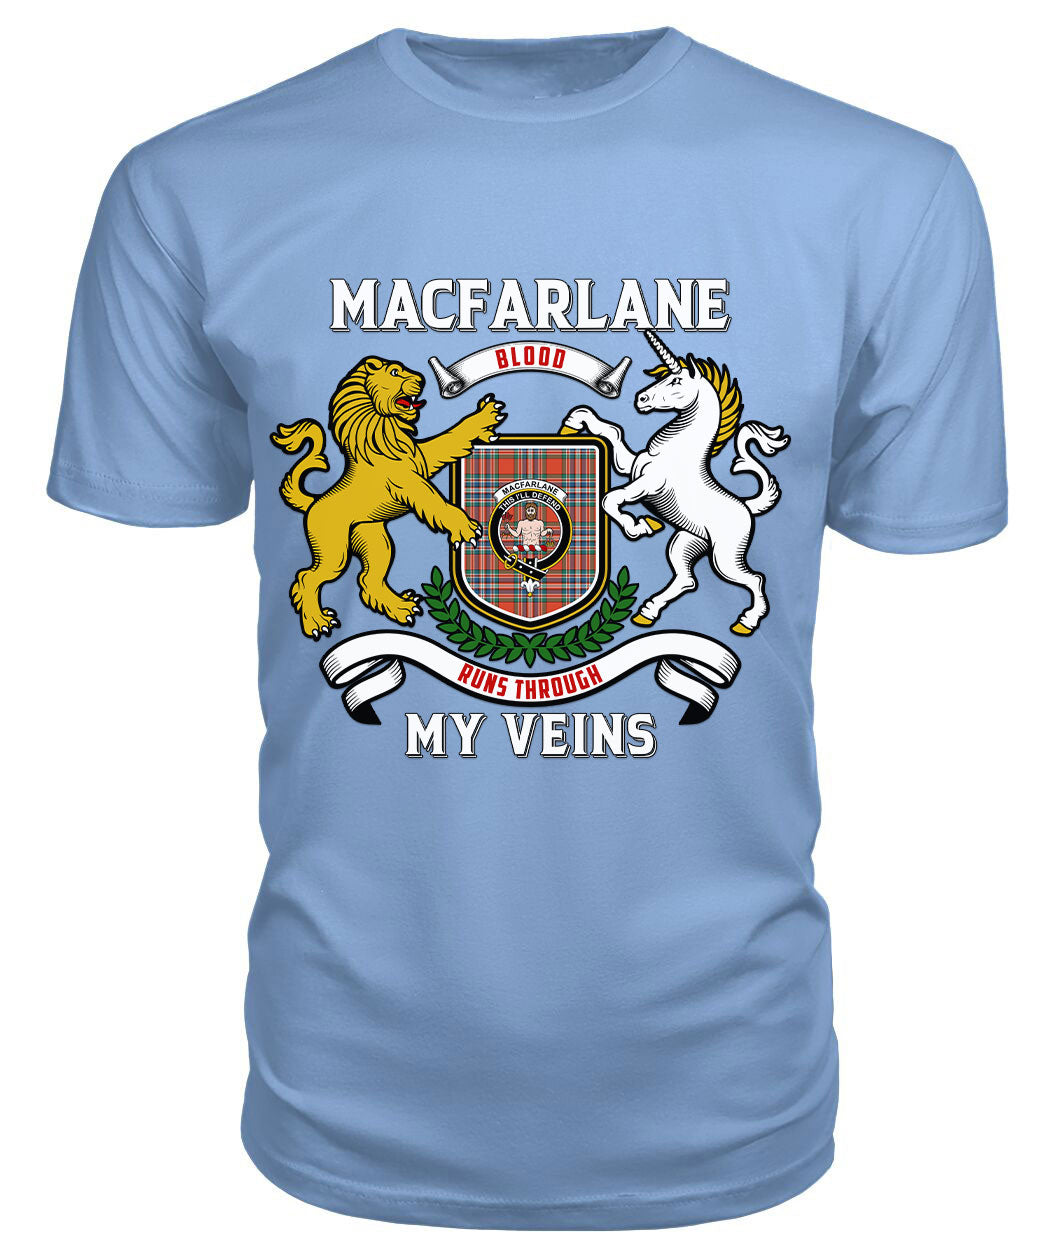 MacFarlane Ancient Tartan Crest 2D T-shirt - Blood Runs Through My Veins Style